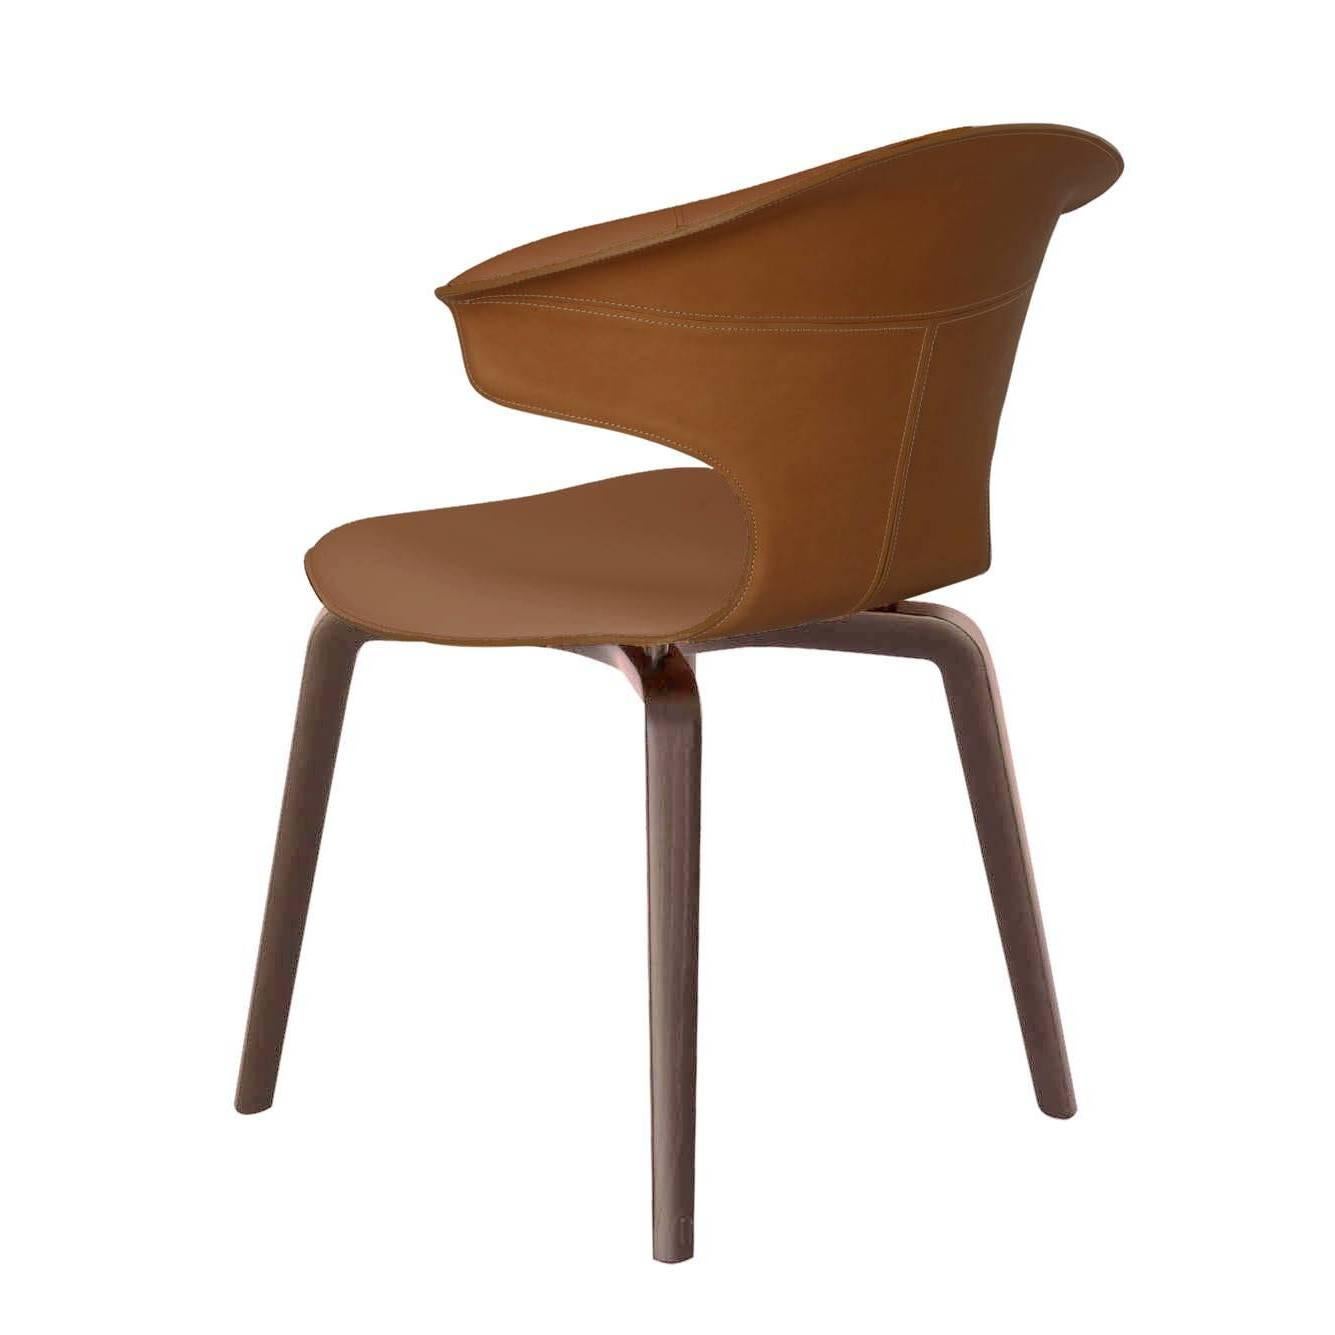 La chaise Montera avec accoudoirs conçue par Roberto Lazzeroni possède une légèreté formelle qui exprime le charme sensoriel de ses matériaux : le traitement brut de coupe exalte la tactilité du cuir sellier et du cuir qui, combinés ensemble, se